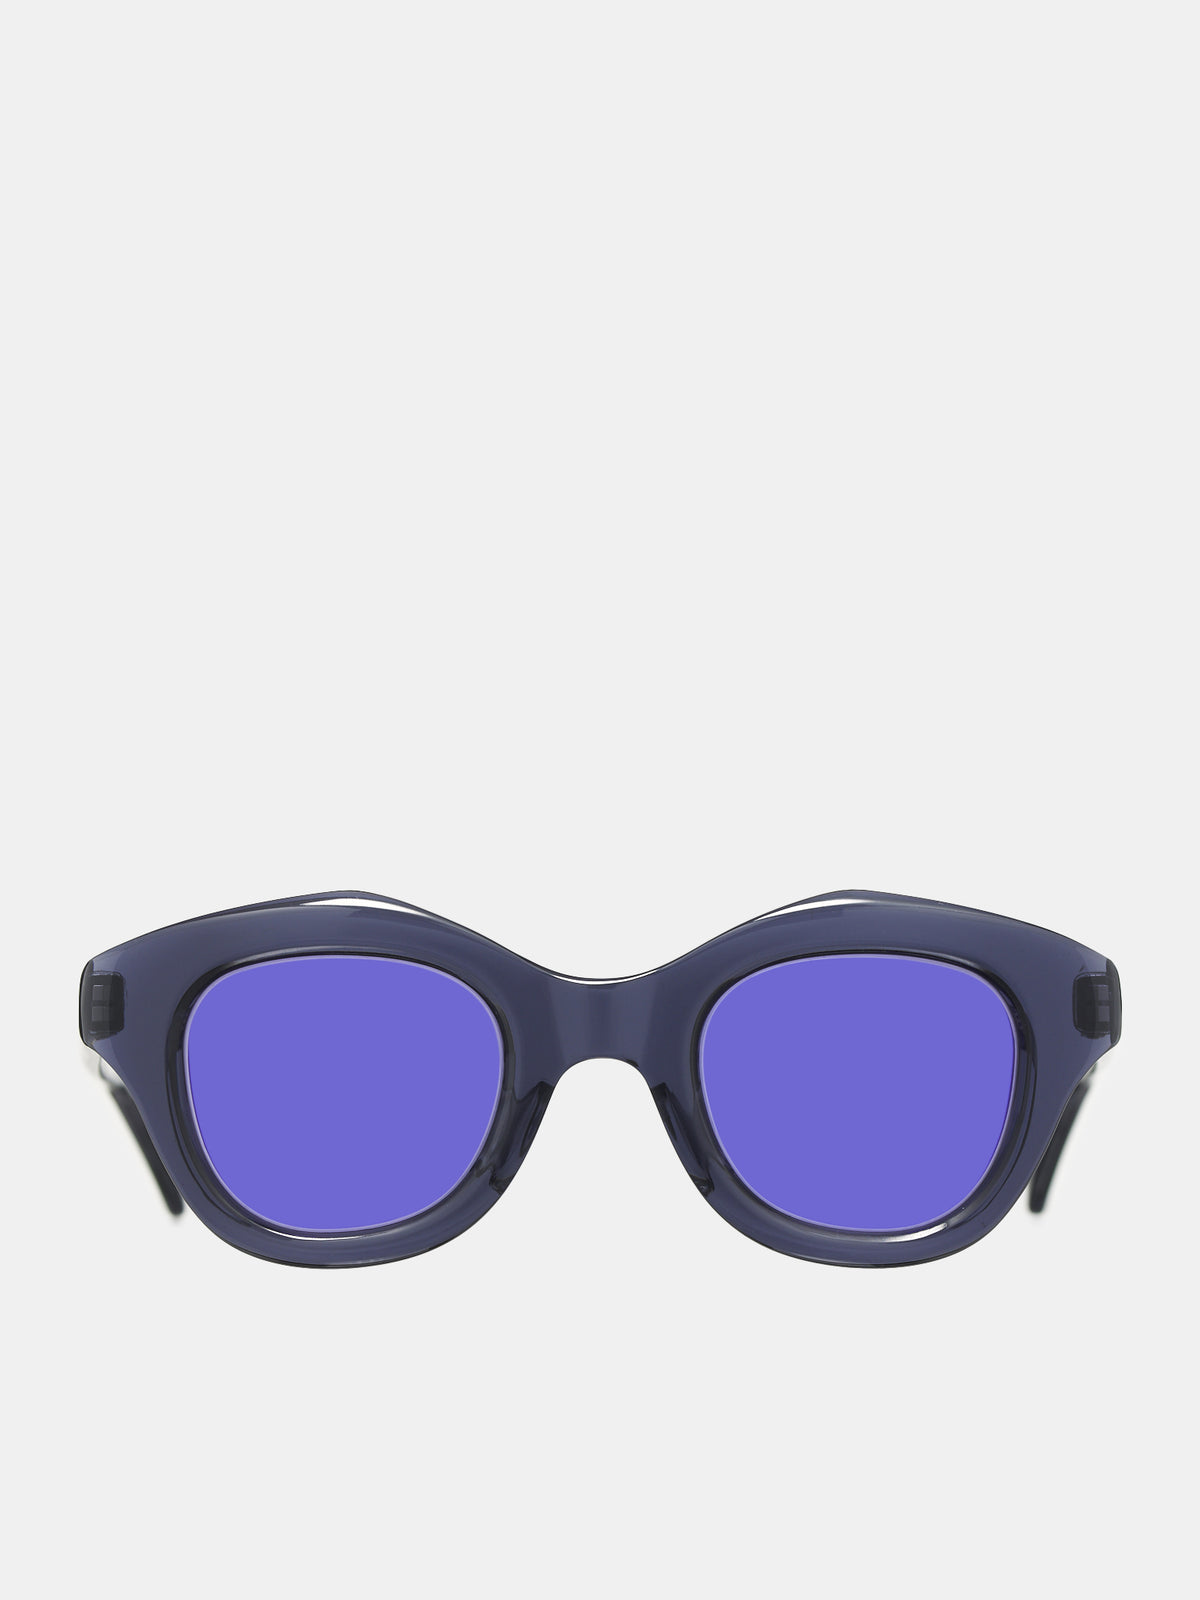 Hook Sunglasses (HOOK-CRYSTAL-GRAY-PL7U)